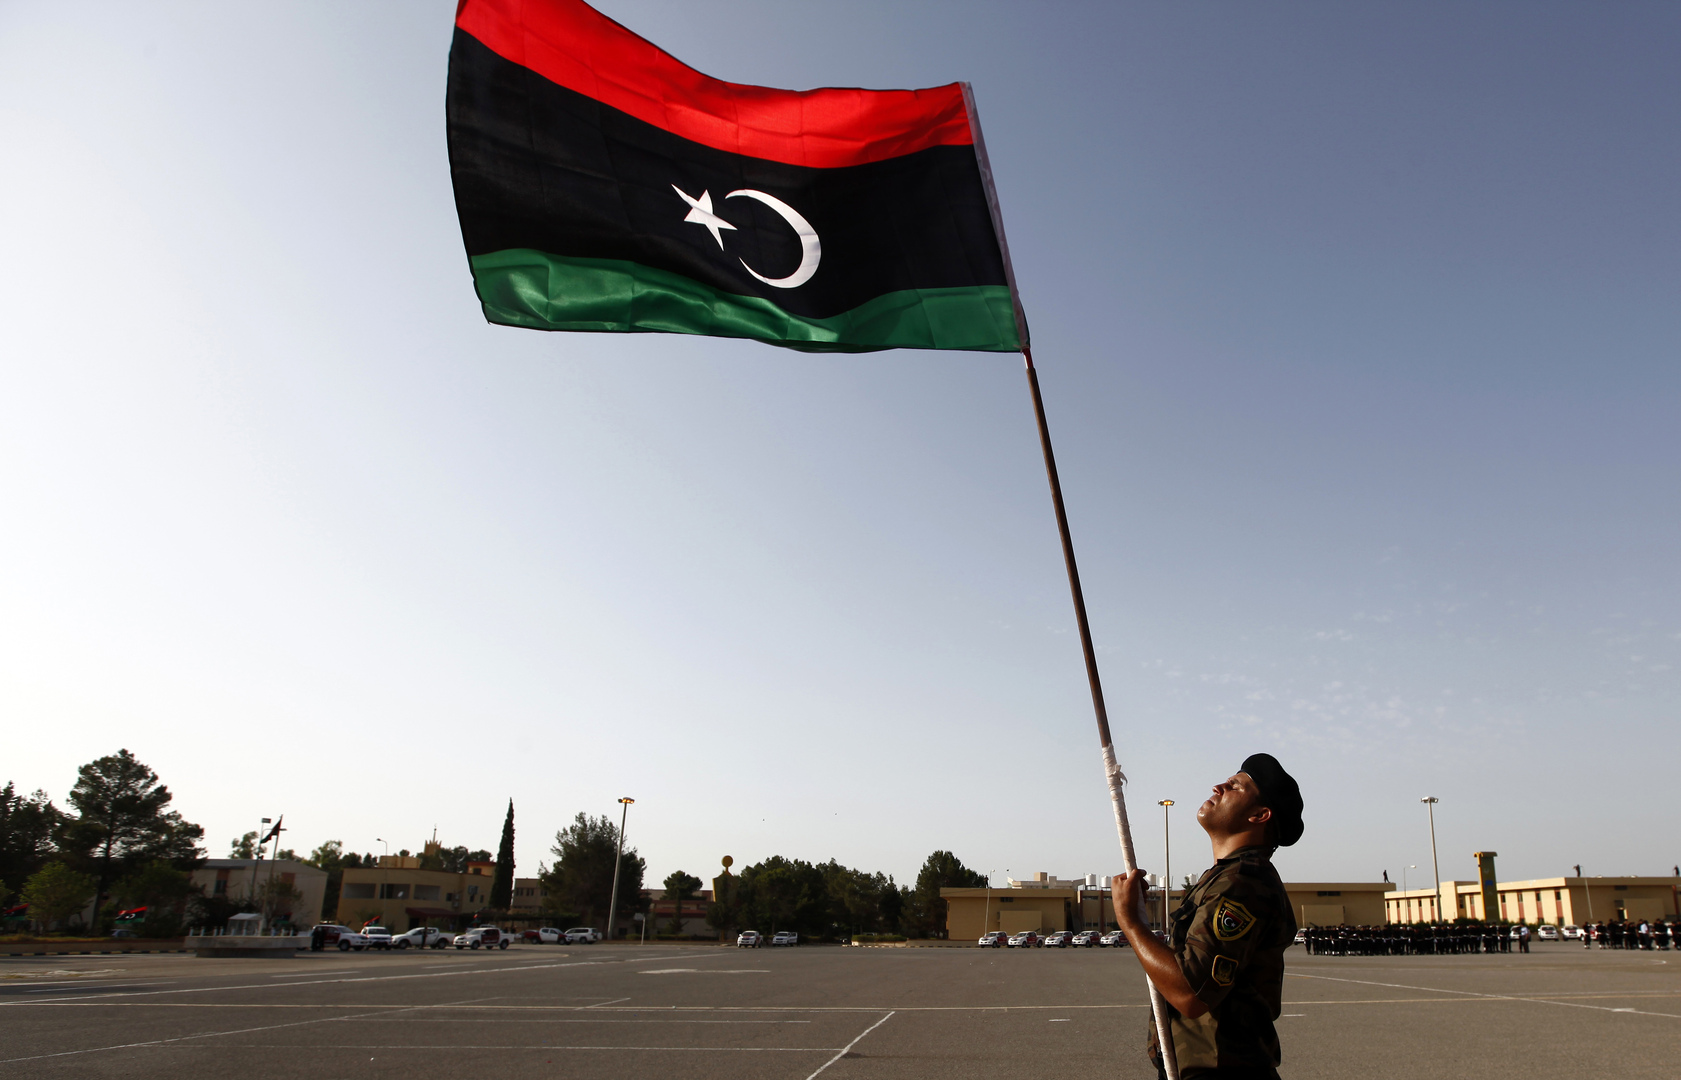 ليبيا.. إصابة ممرضة فلبينية بكورونا وبلادها تدعو طرابلس لضمان سلامة الموظفين الطبيين